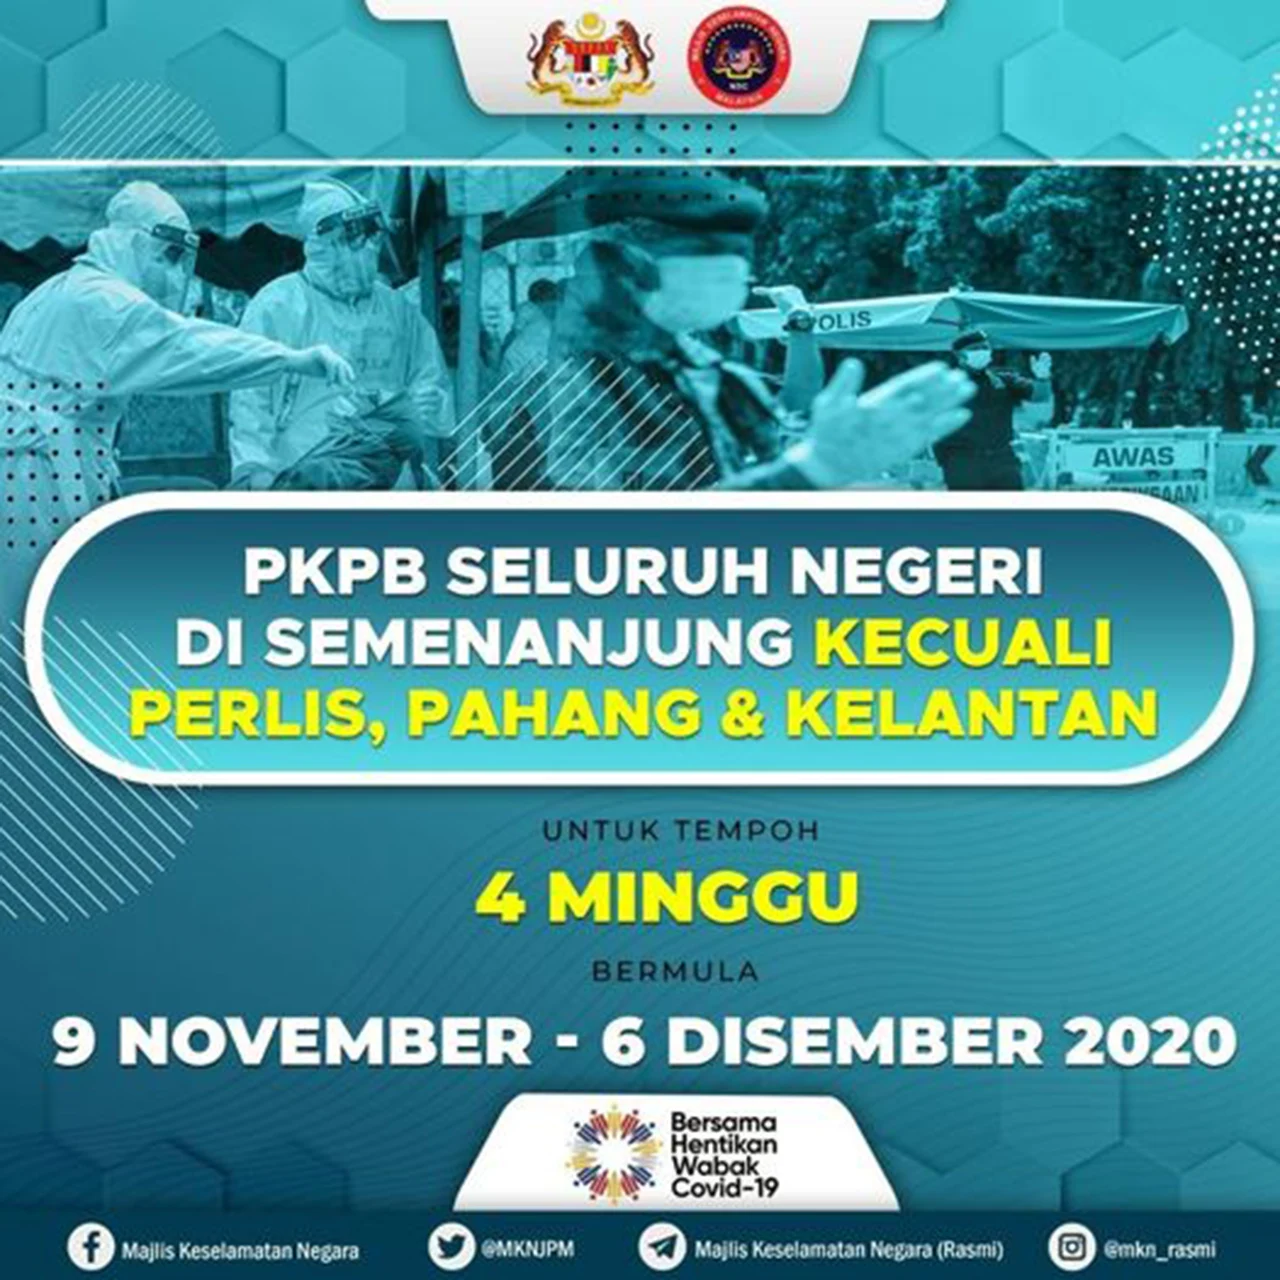 PKPB dilanjutkan dari 9 November 2020 hingga 6 Disember 2020